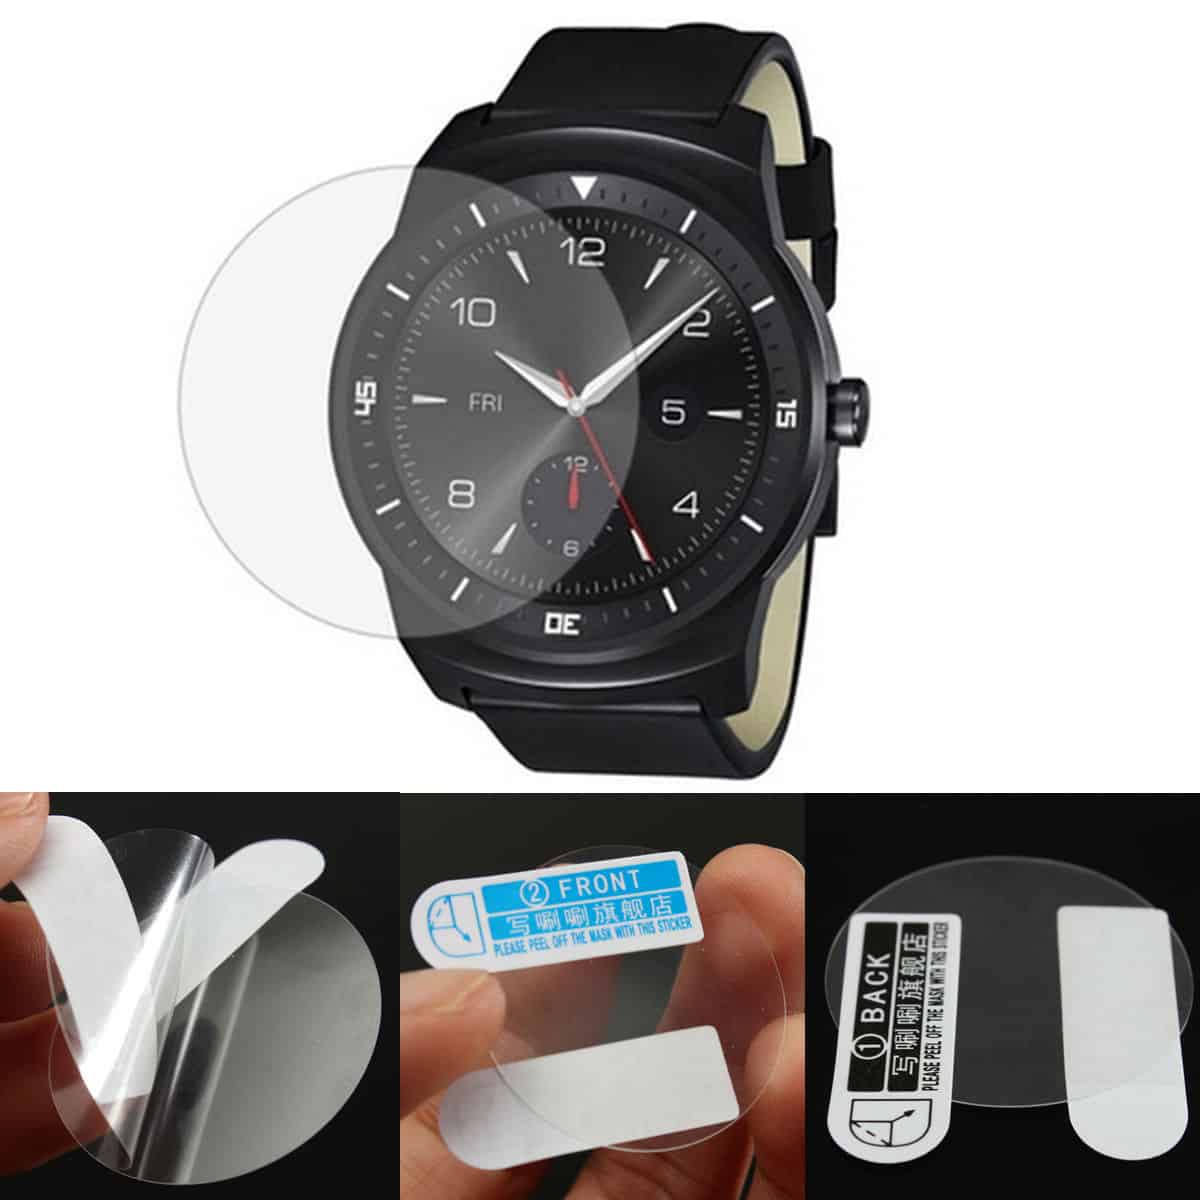 Schutzgläser aus gehärtetem Glas für die Smartwatch? Gibt es z.B. für LG, Sony und Motorola für kleines Geld aus China!